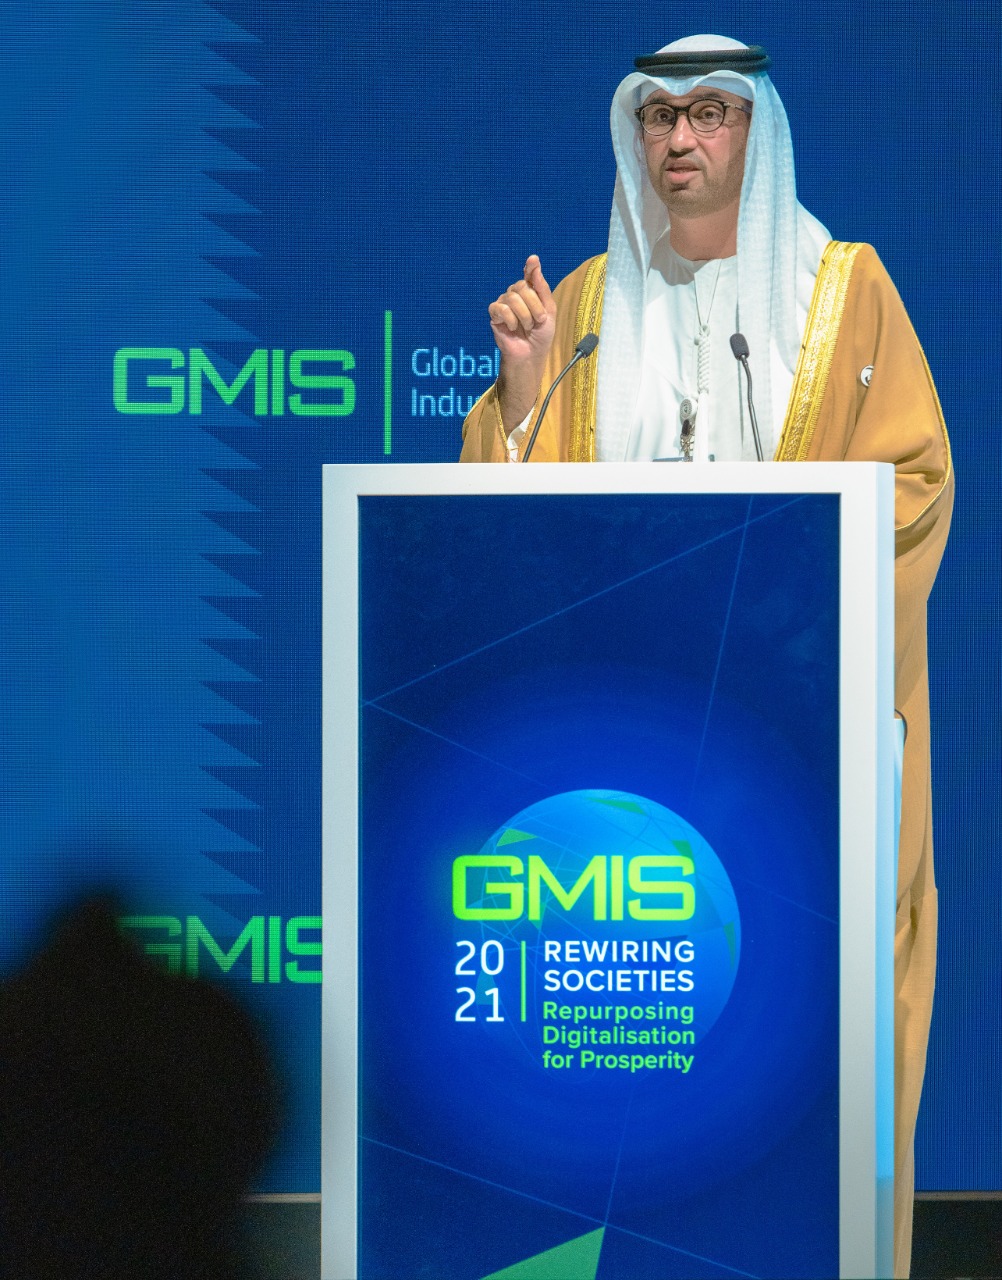 سلطان الجابر وزير الصناعة والتكنولوجيا الإماراتى بافتتاح القمة العالمية للصناعة (1)